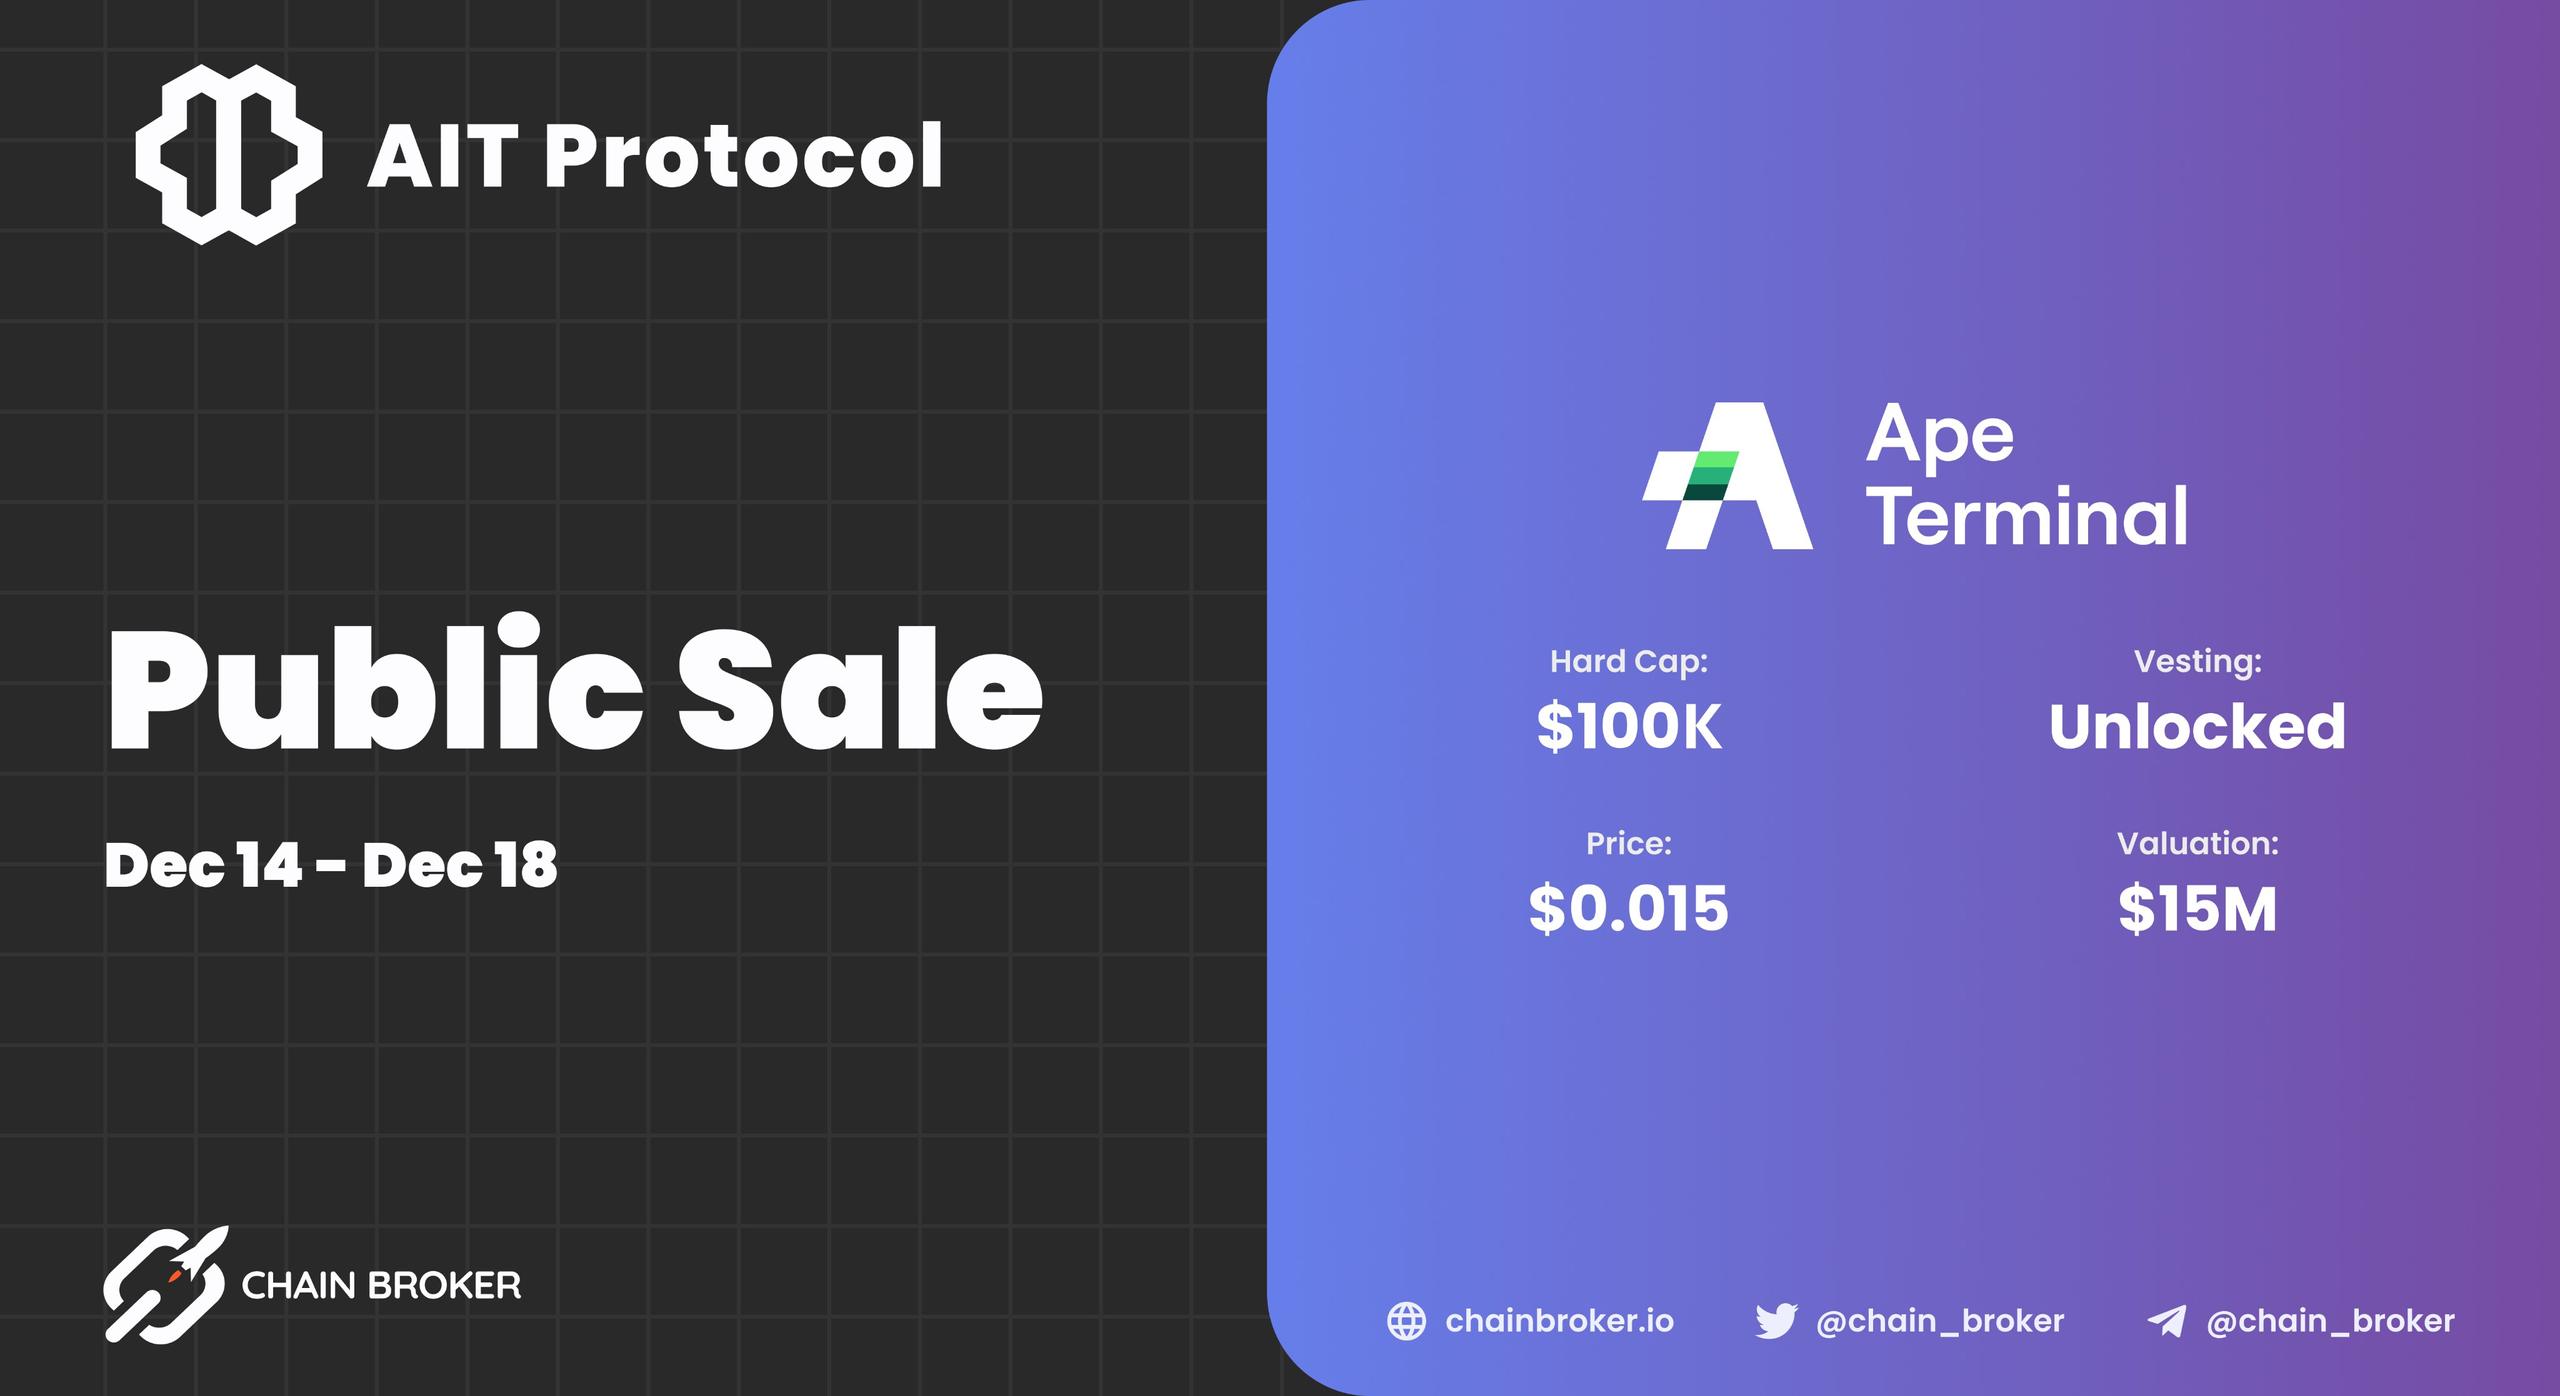 AIT Protocol announces new Public Sale on Ape Terminal